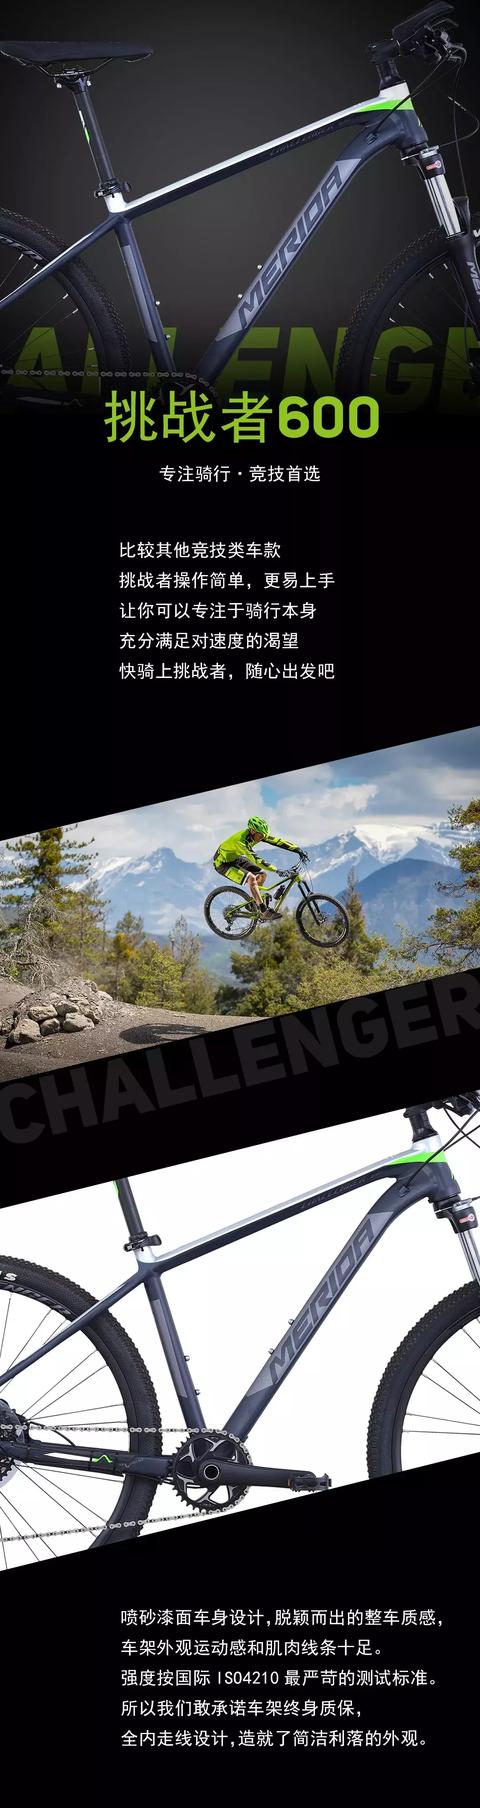 挑战者600|专注骑行·竞技首选